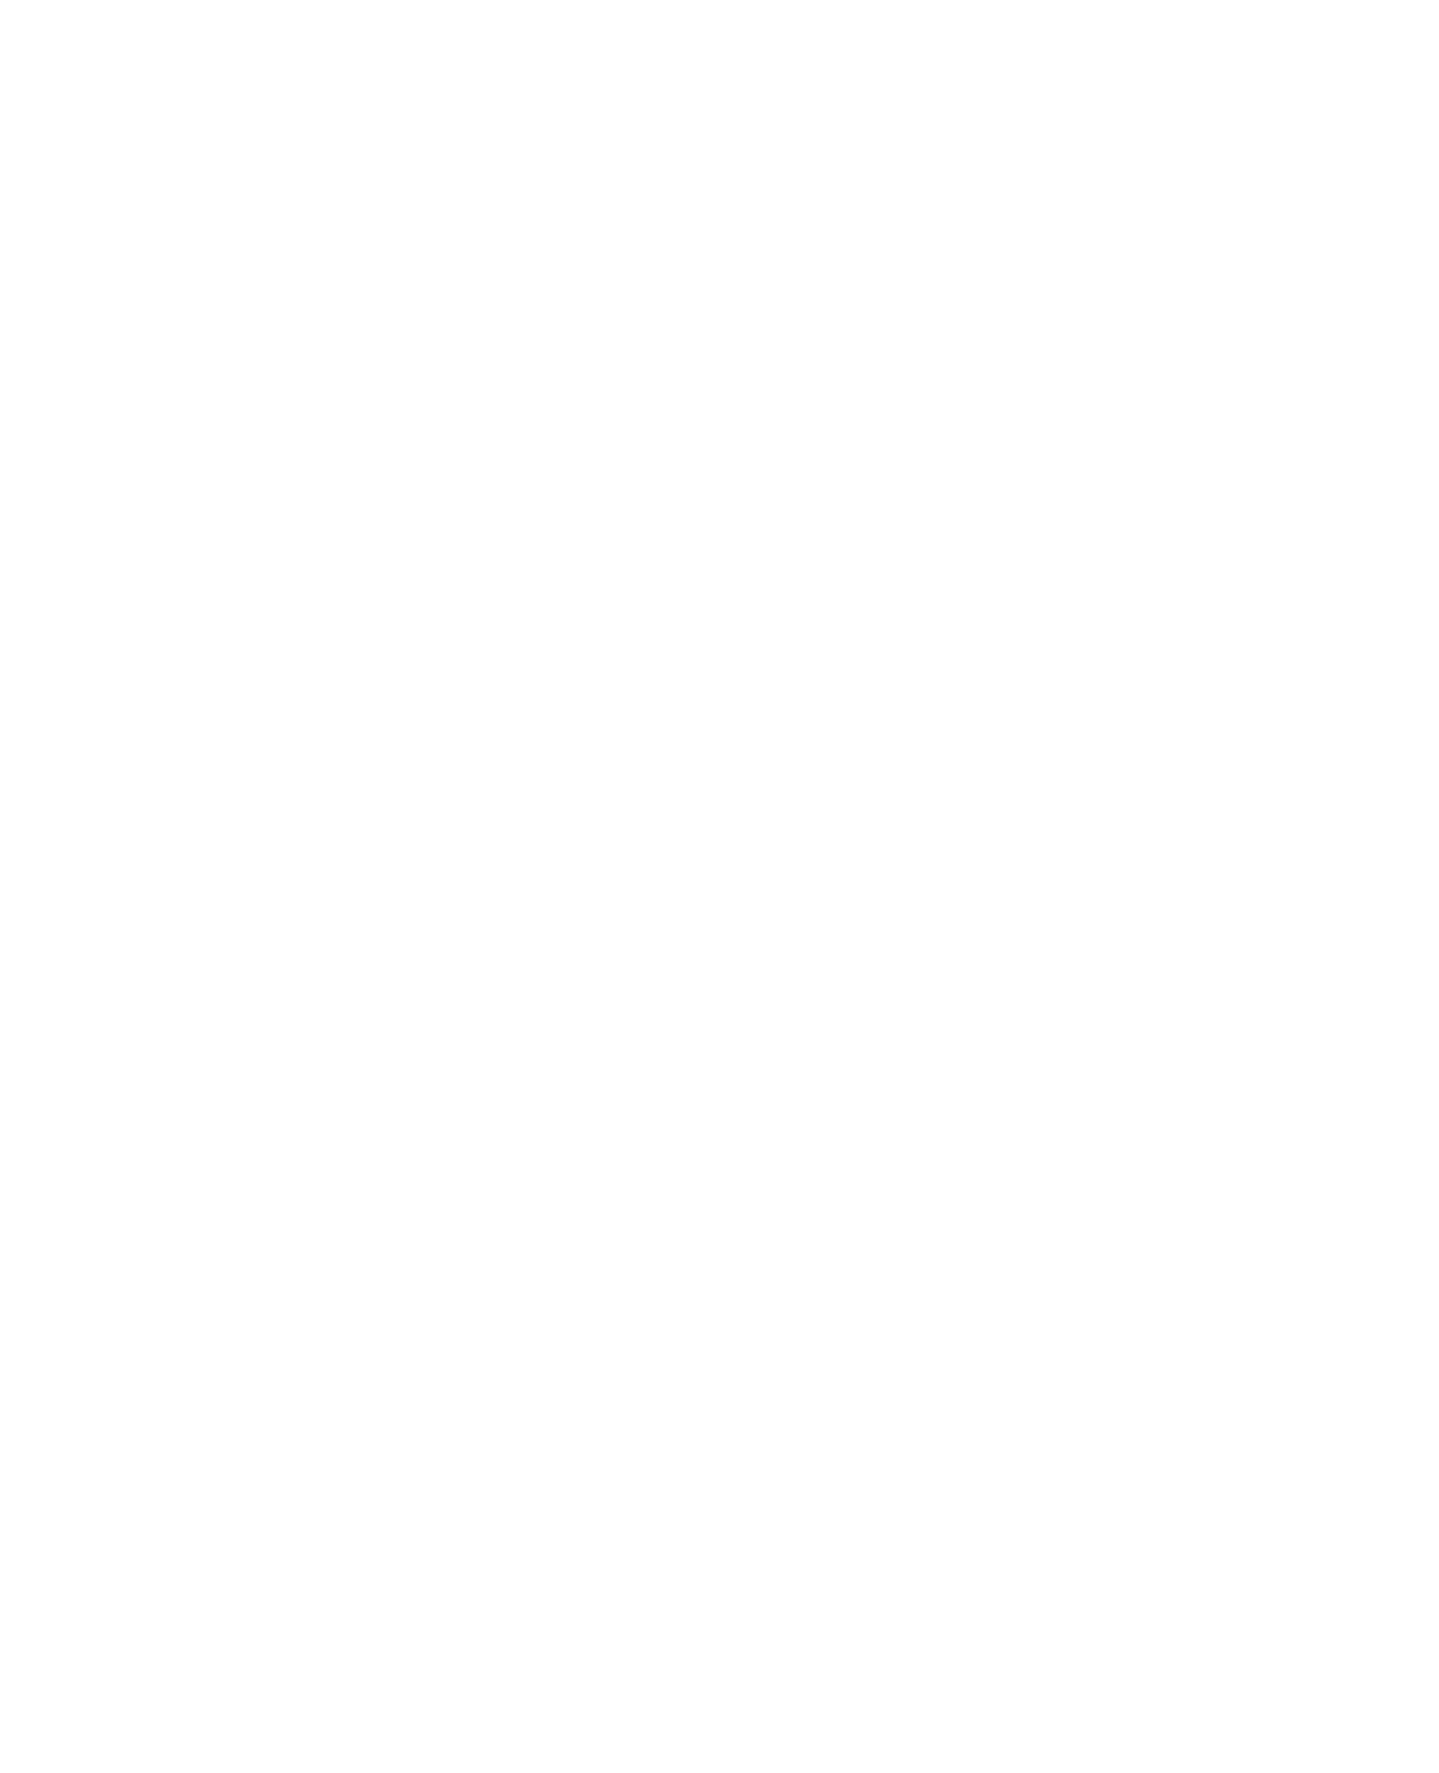 Jake Schmidt Saddlery Crawford, Texas - logo white